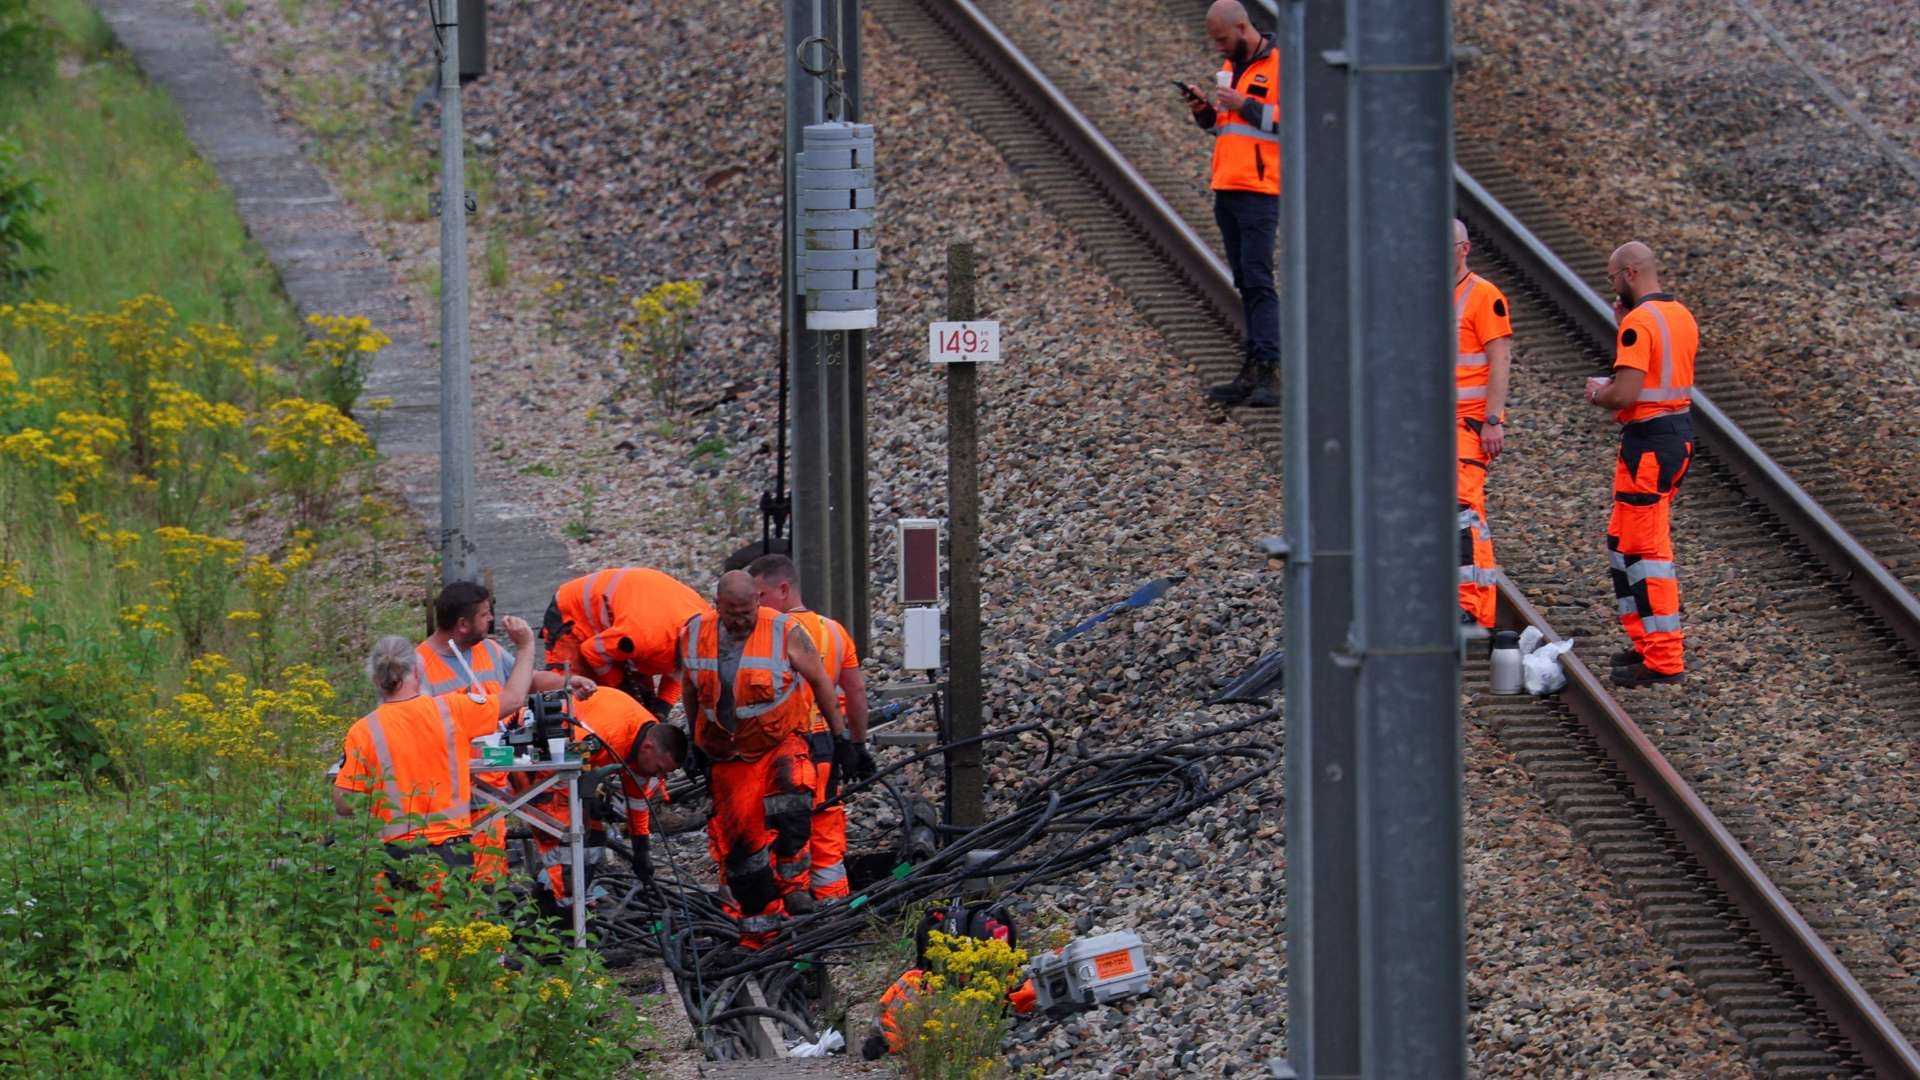 Los técnicos ferroviarios trabajaron arduamente para reparar las instalaciones. Foto Reuters